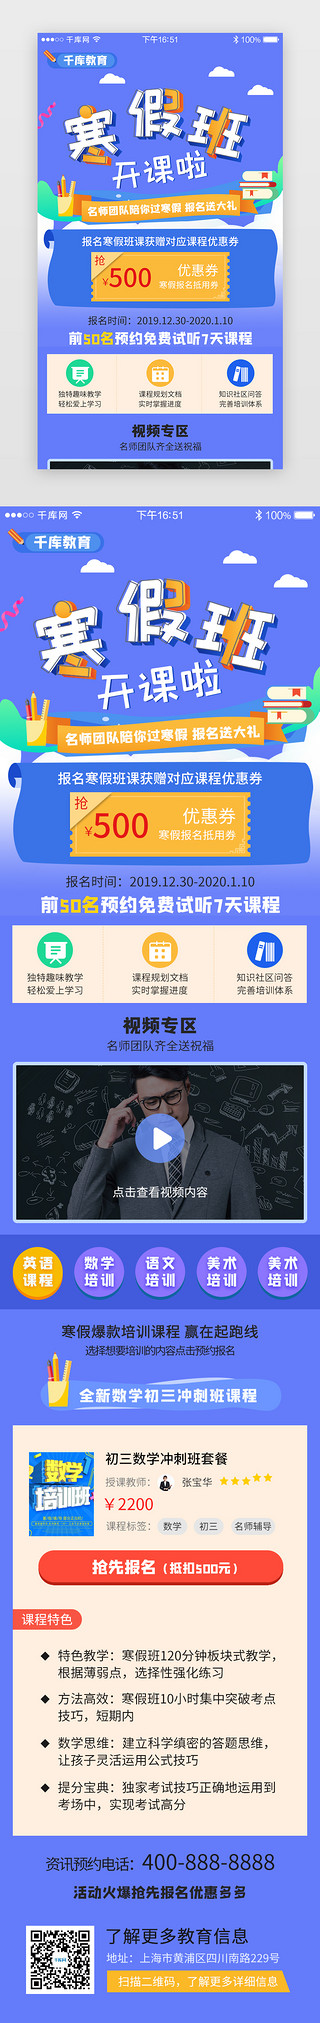 蓝色系app寒假培训教育H5